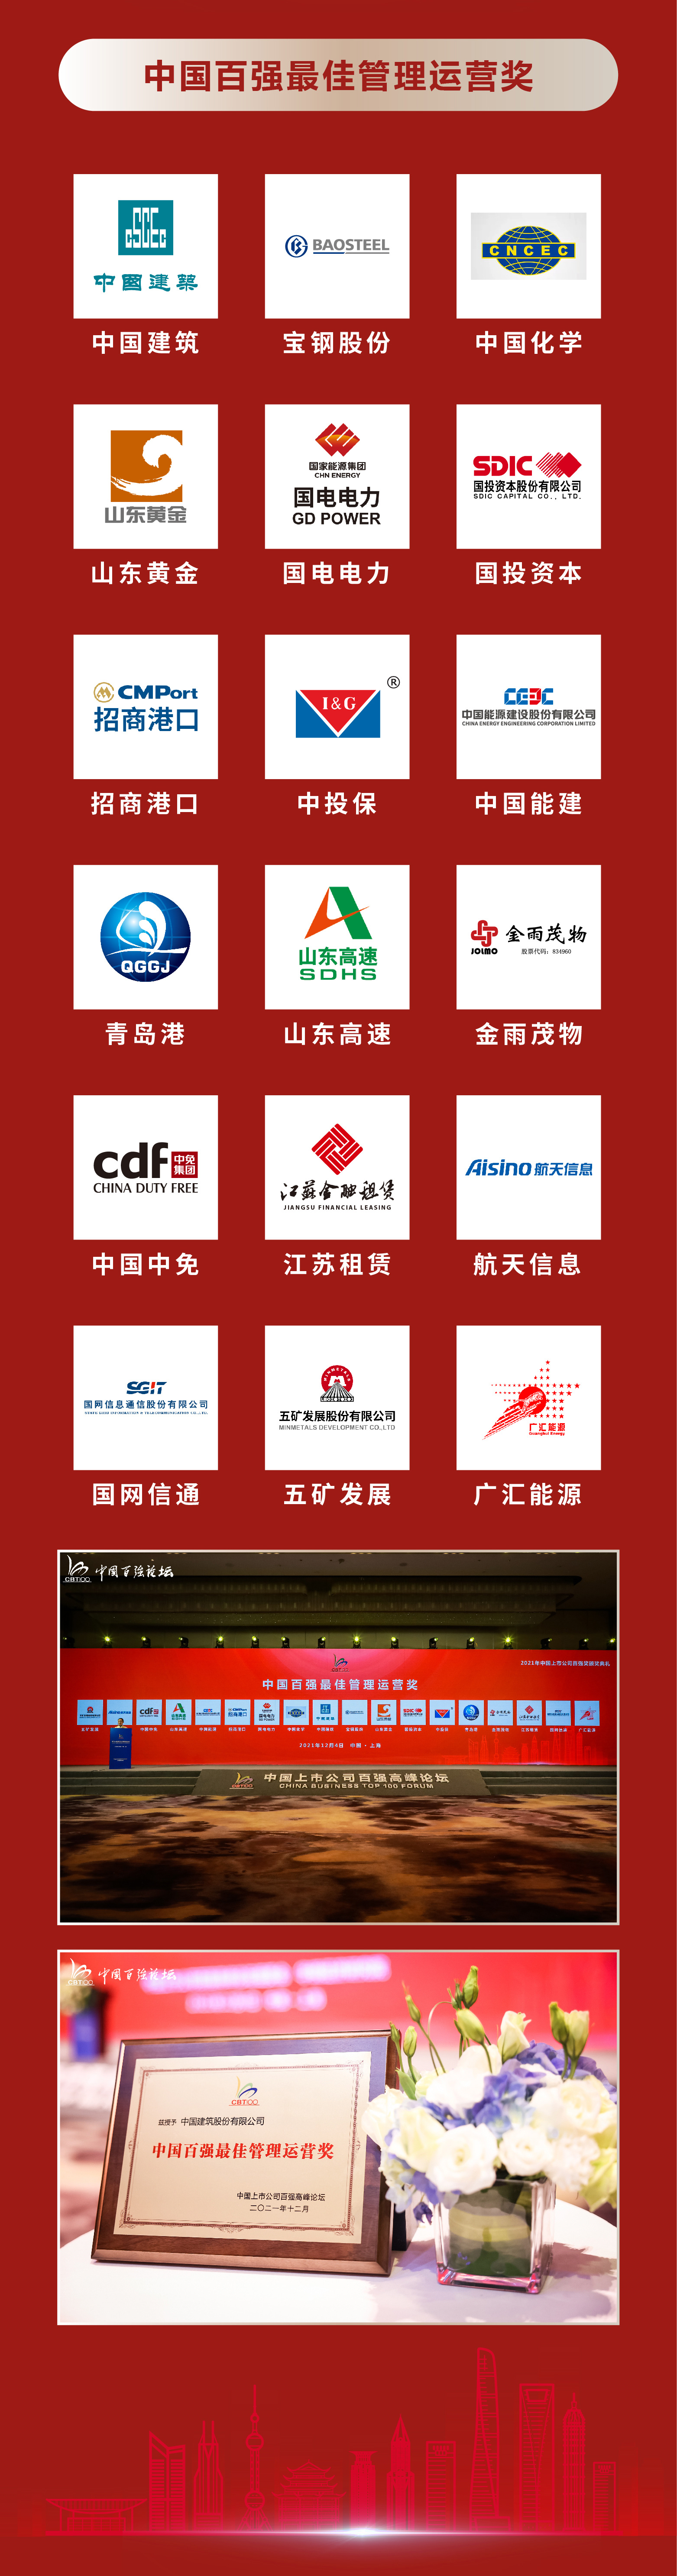 2021年中国上市公司百强奖获奖名单(图7)